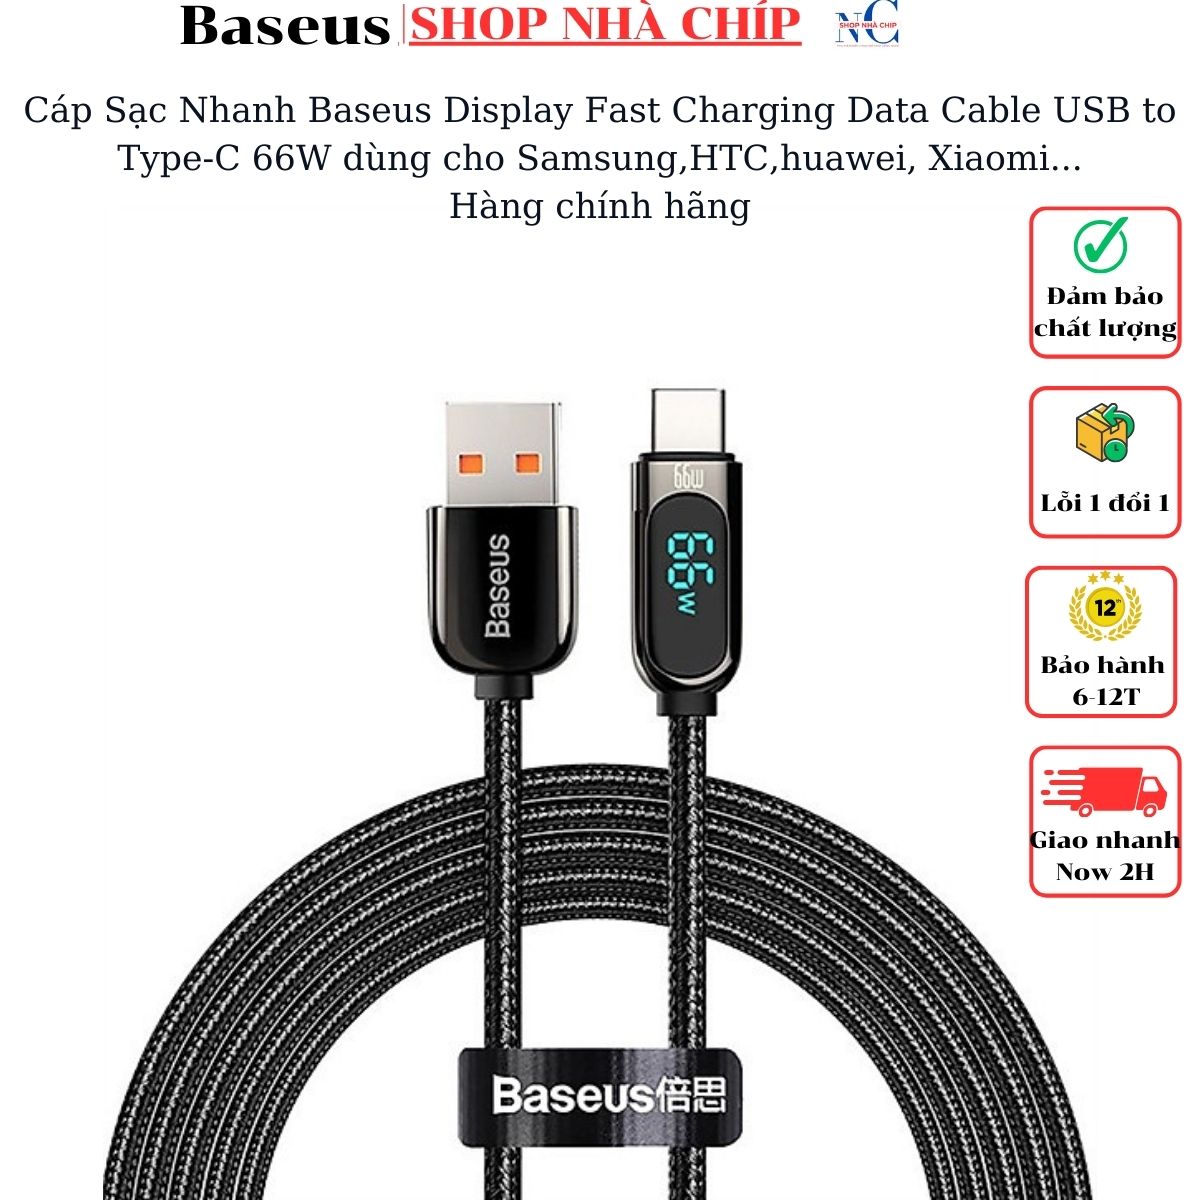 Hình ảnh Cáp Sạc Nhanh Baseus Display Fast Charging Data Cable USB to Type-C 66W dùng cho Samsung,HTC,huawei, Xiaomi...- Hàng chính hãng